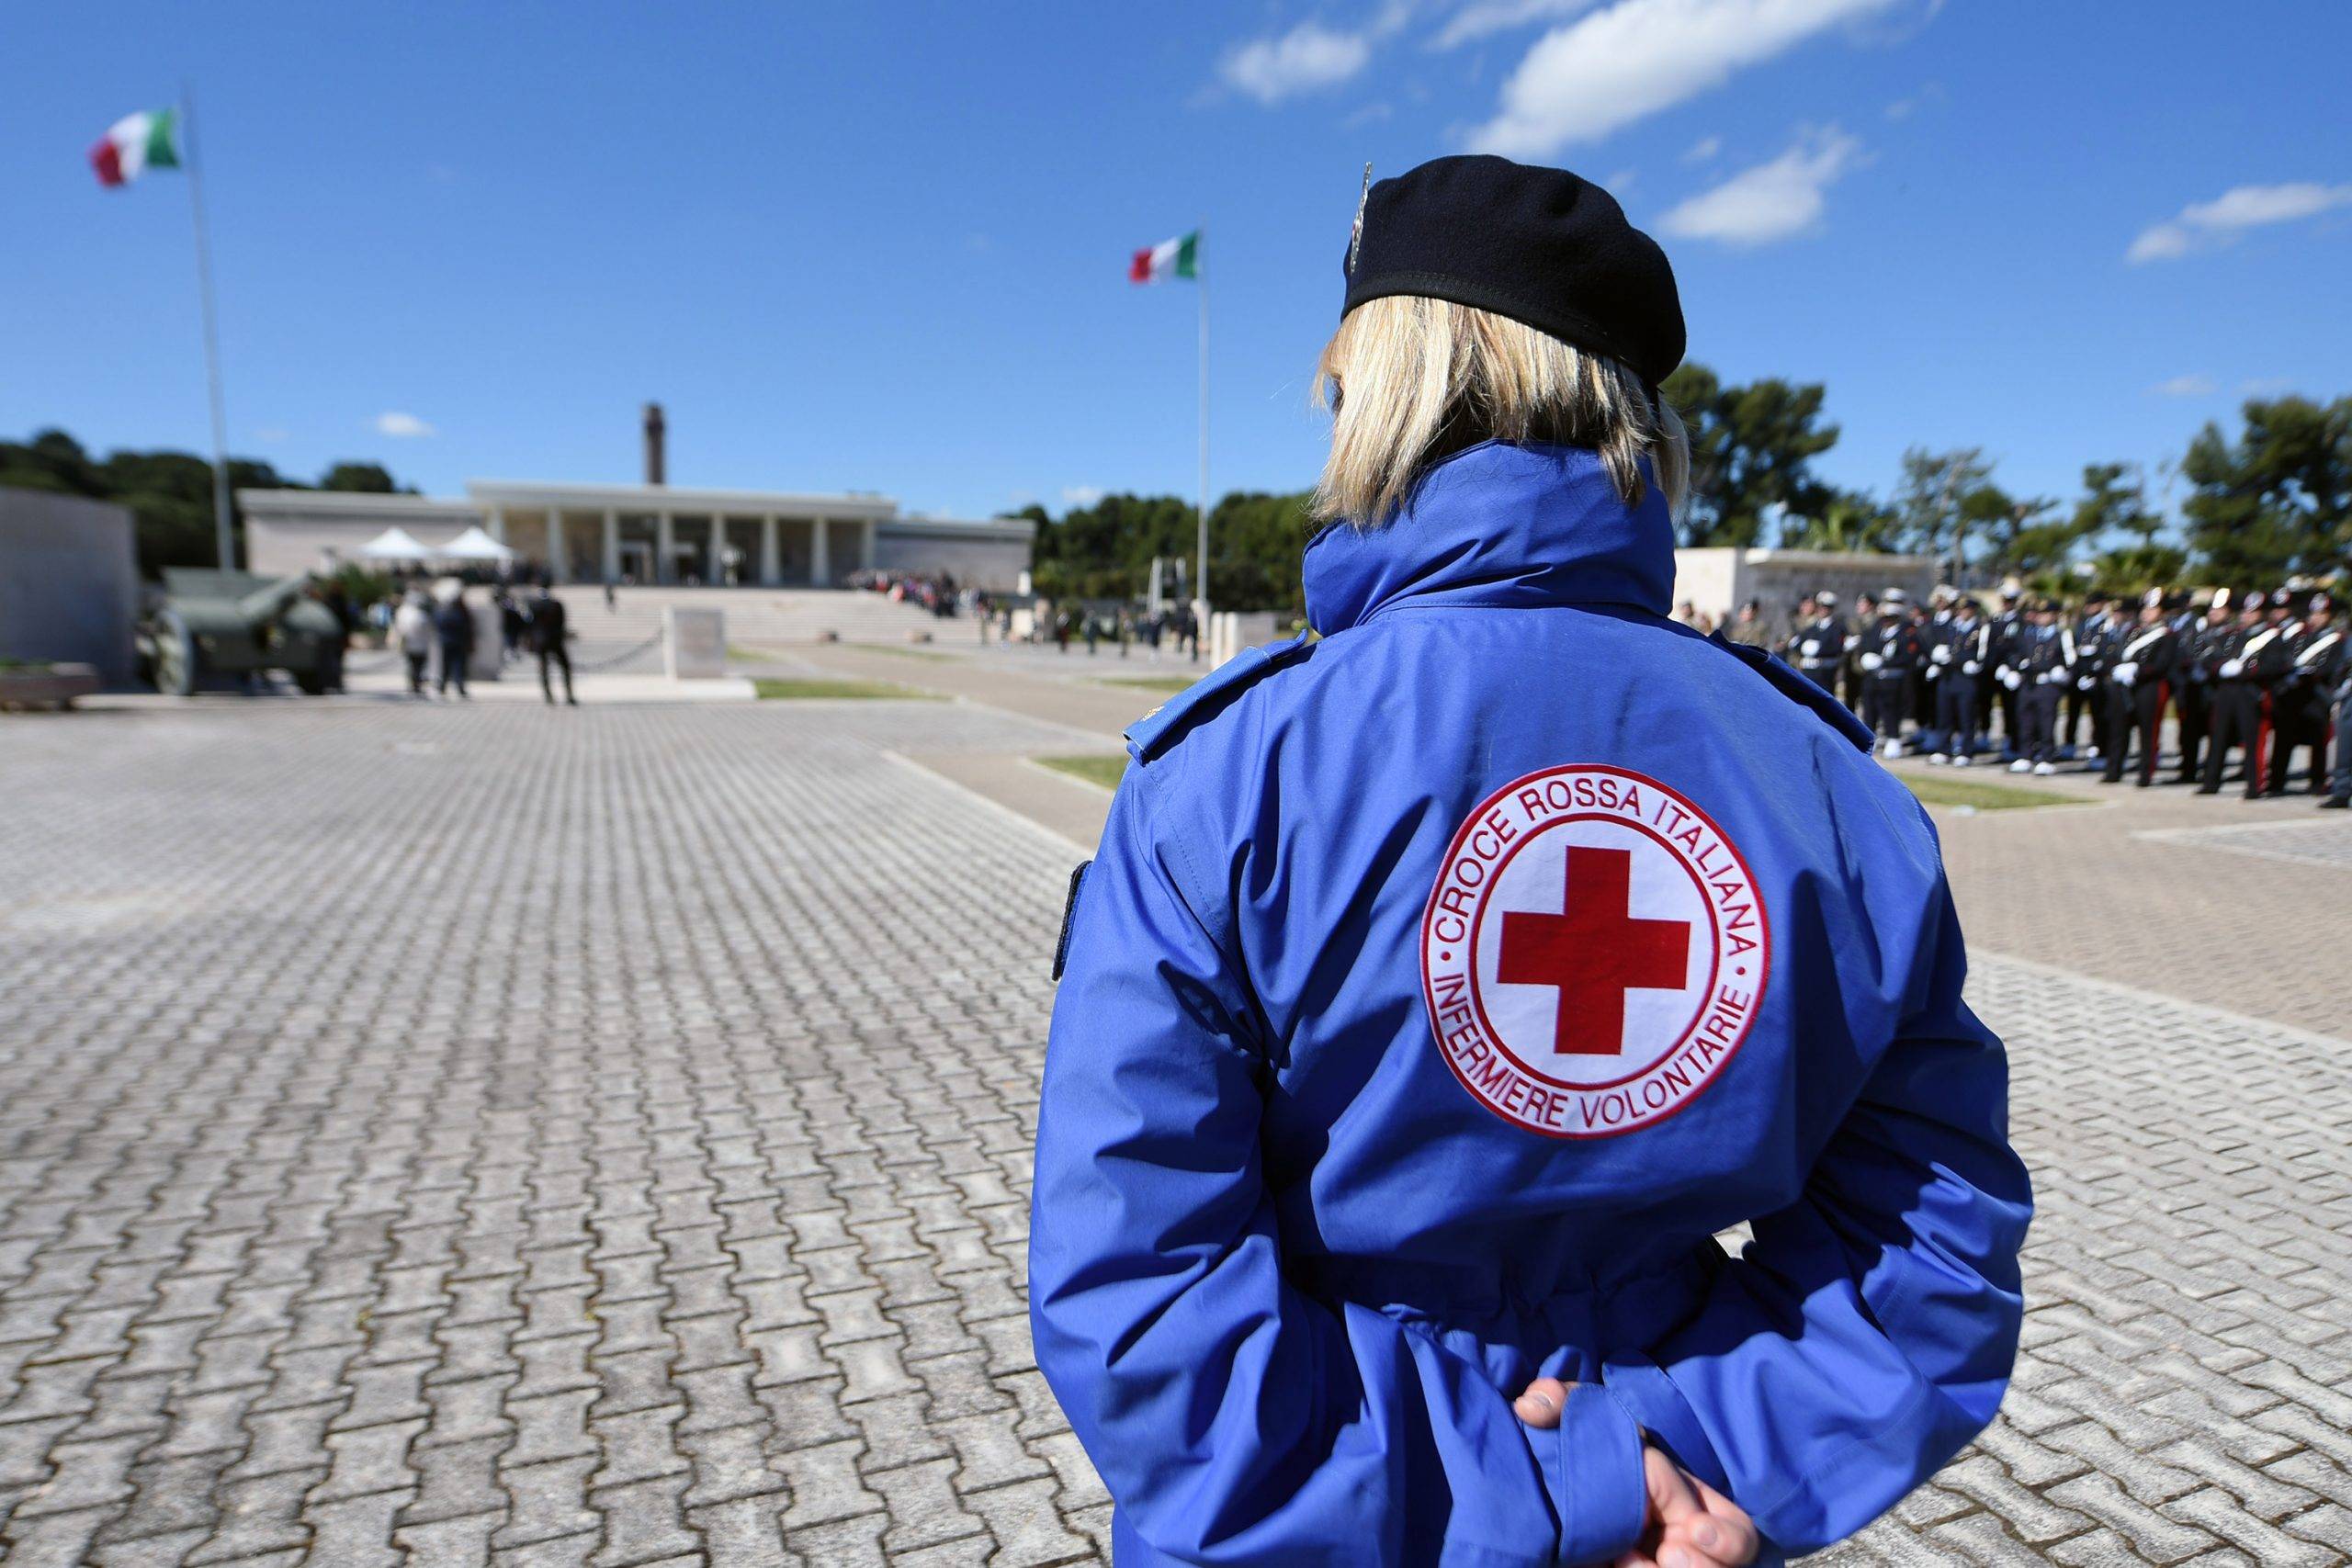 Valastro (Croce Rossa): “Donare sangue è un gesto d’amore”